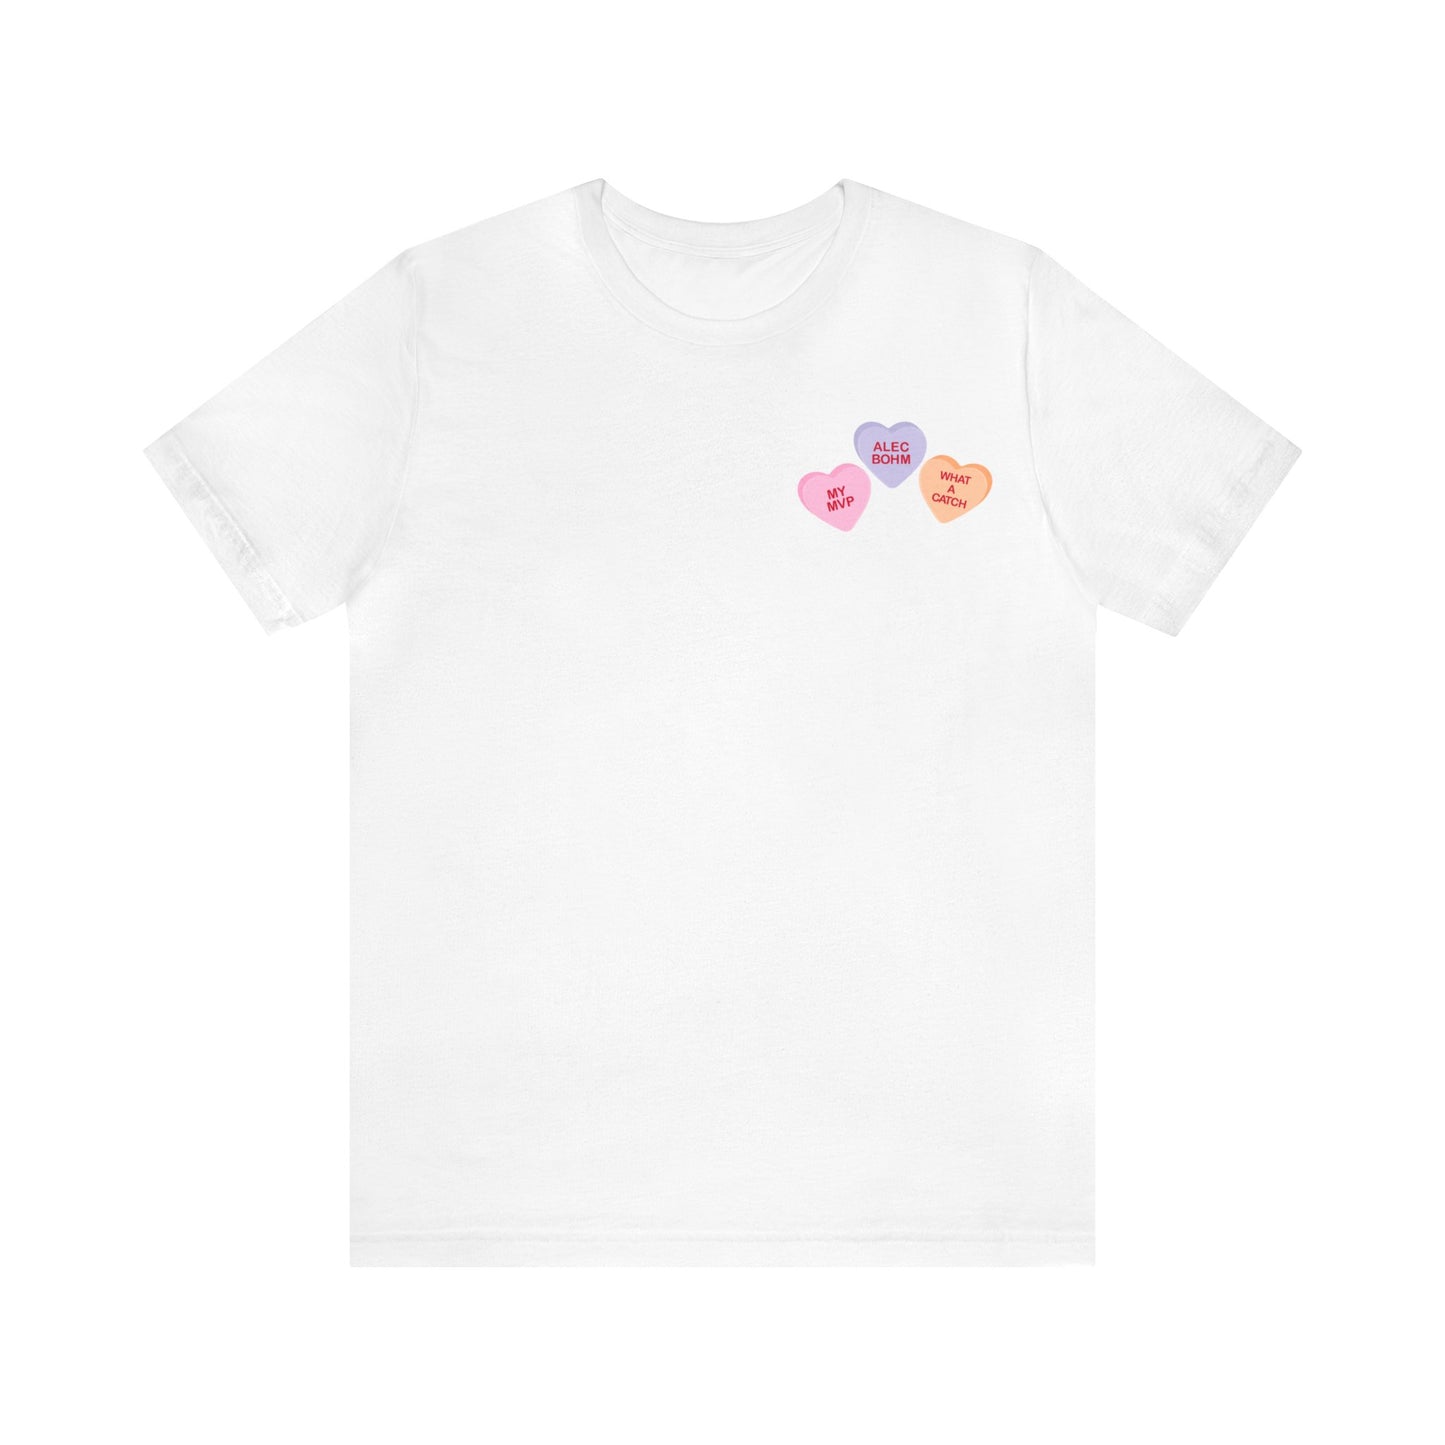 Alec Bohm Valentine's - Unisex T-shirt